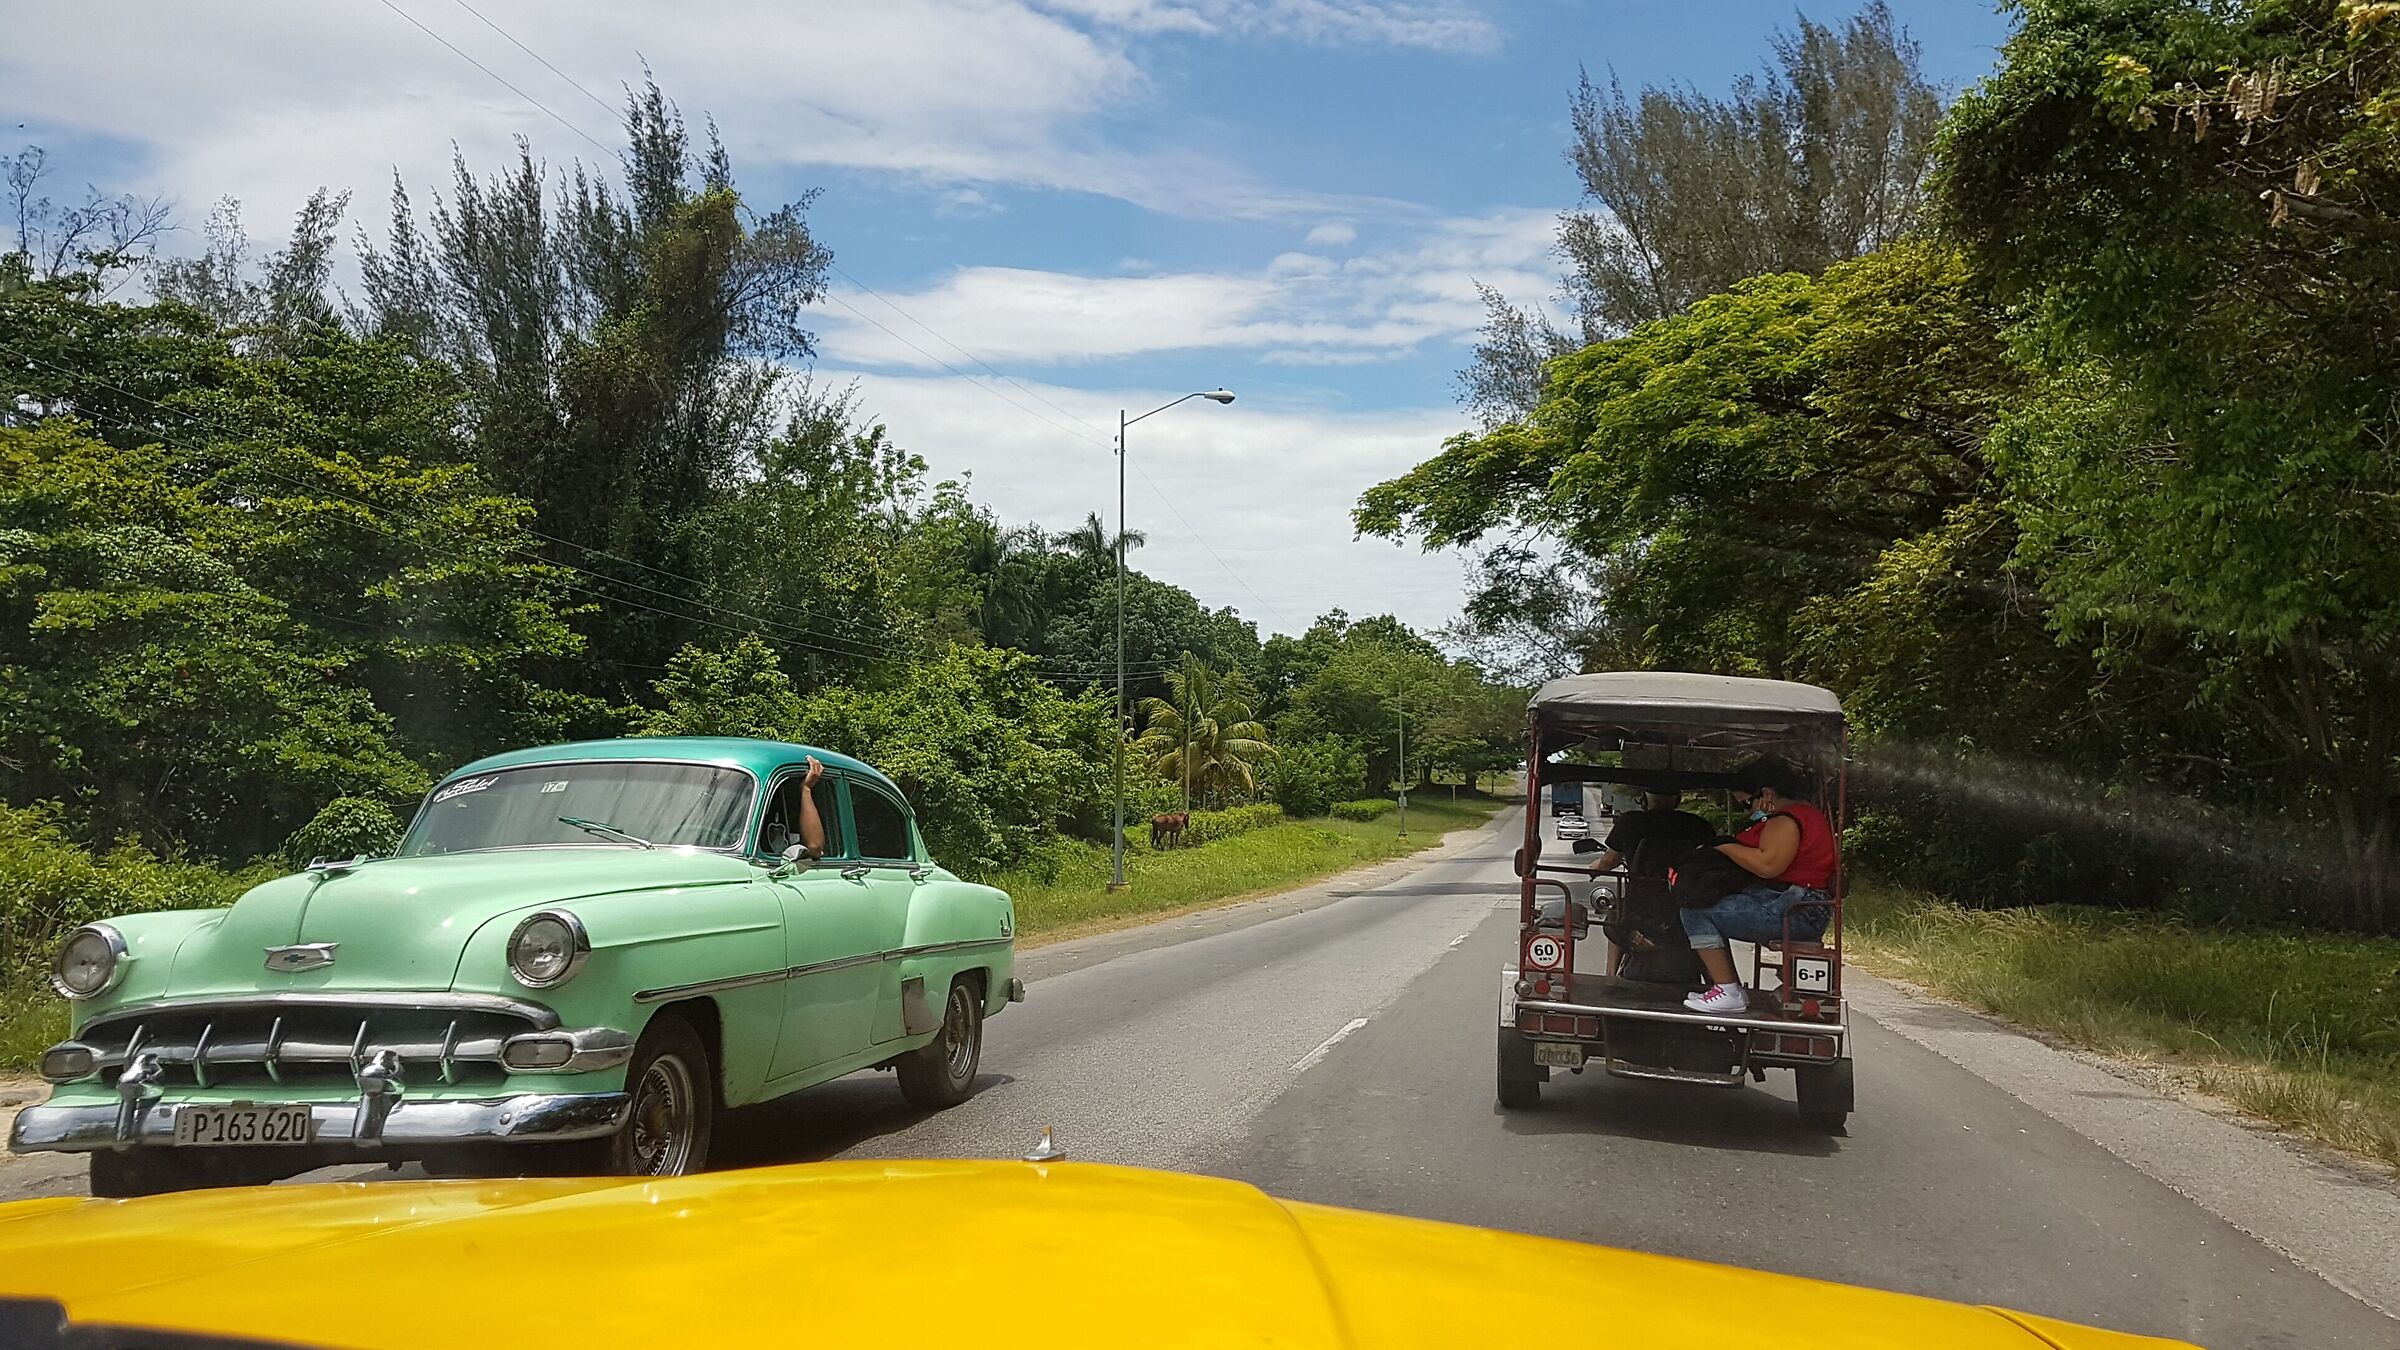 Observando Cuba desde el taxi amarillo...